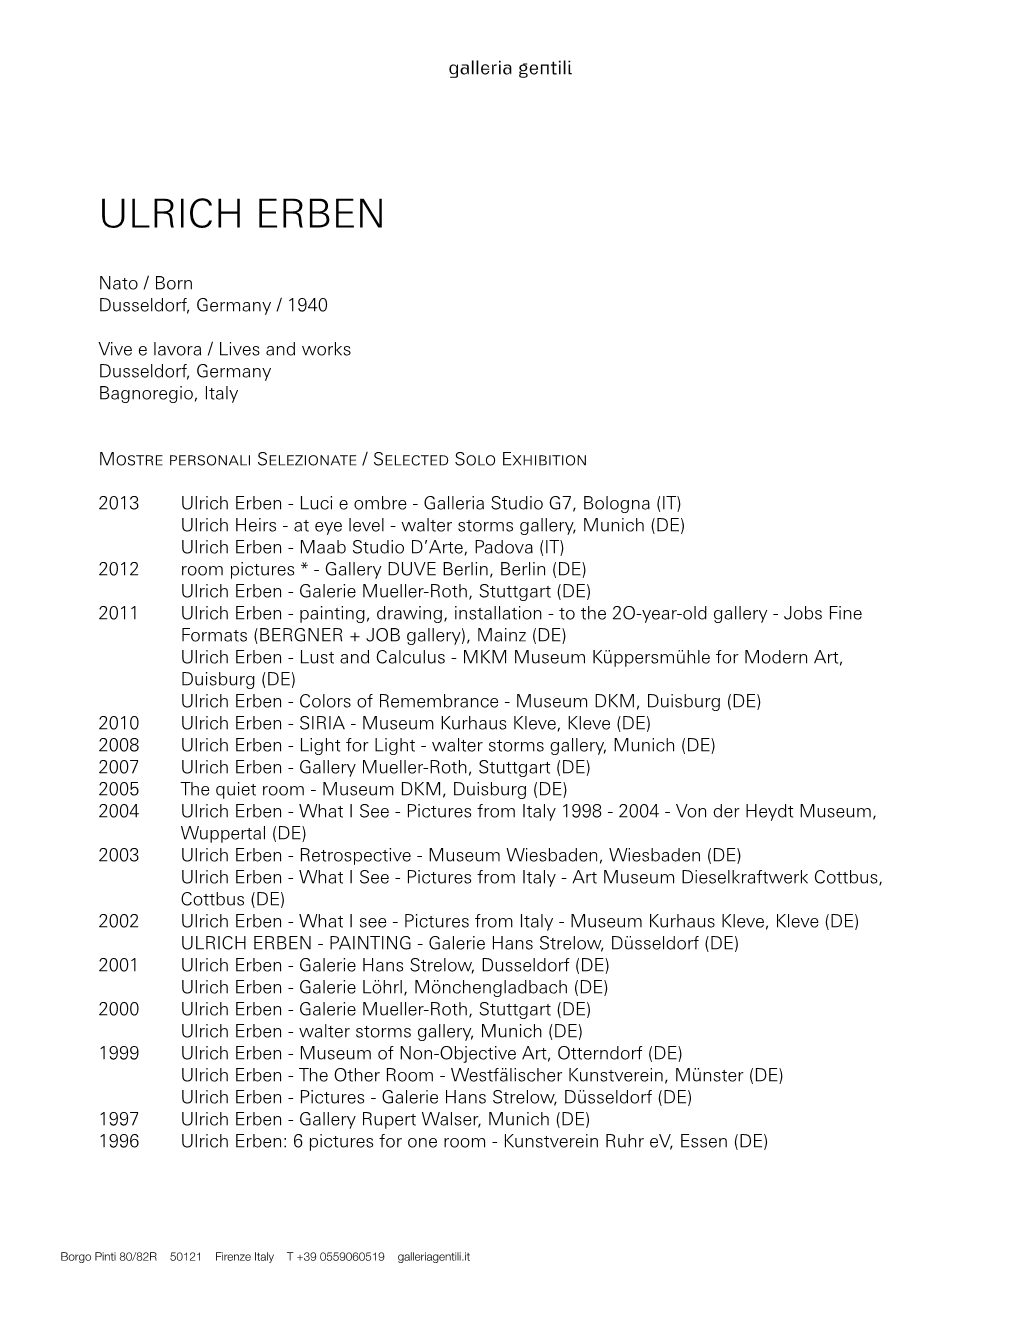 Ulrich Erben